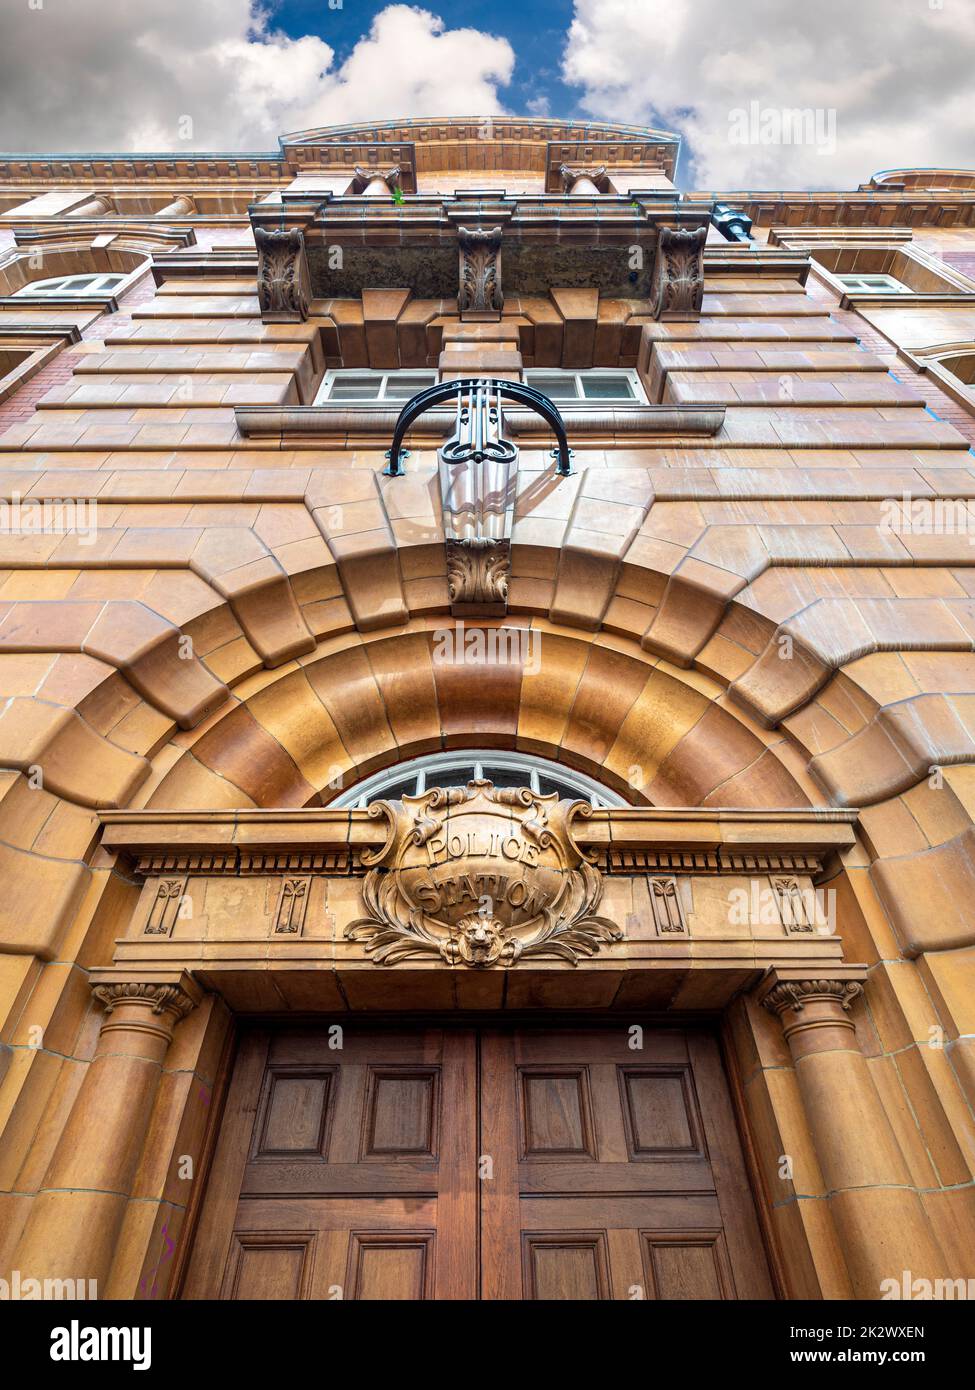 Linteau de porte en pierre restauré du poste de police de Whitworth Street, qui fait partie de la caserne de pompiers de London Road. Manchester. ROYAUME-UNI Banque D'Images